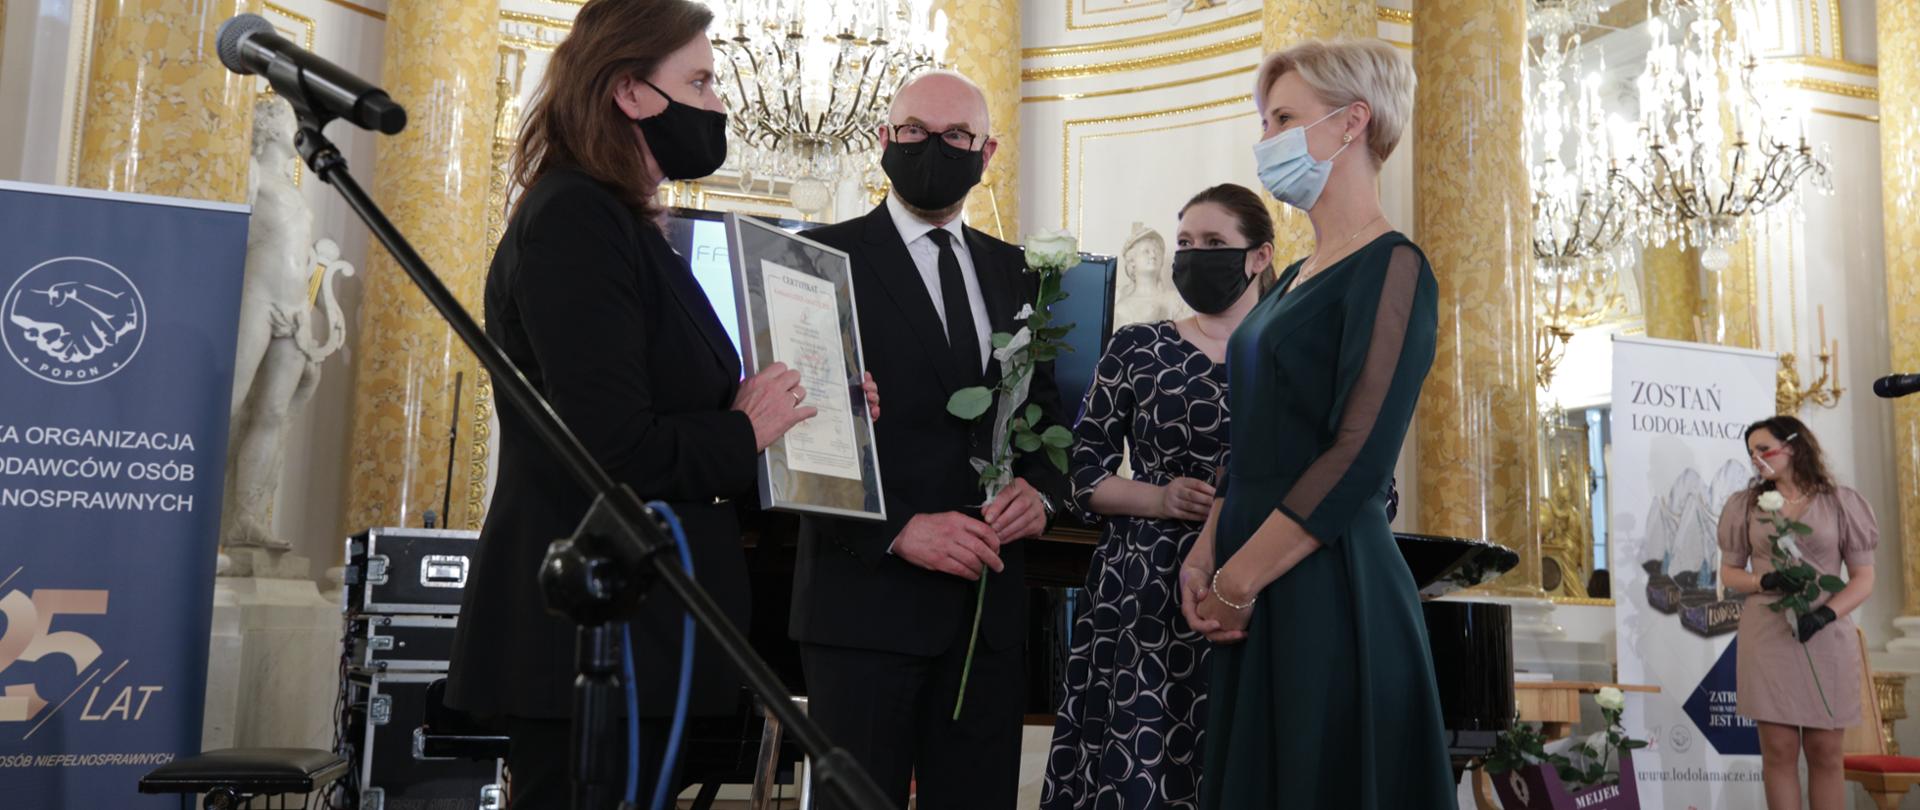 Na zdjęciu trzy kobiety i mężczyzna. Jedna z kobiet wręcza drugiej dyplom w ramce. Mężczyzna trzyma w ręku białą różę.